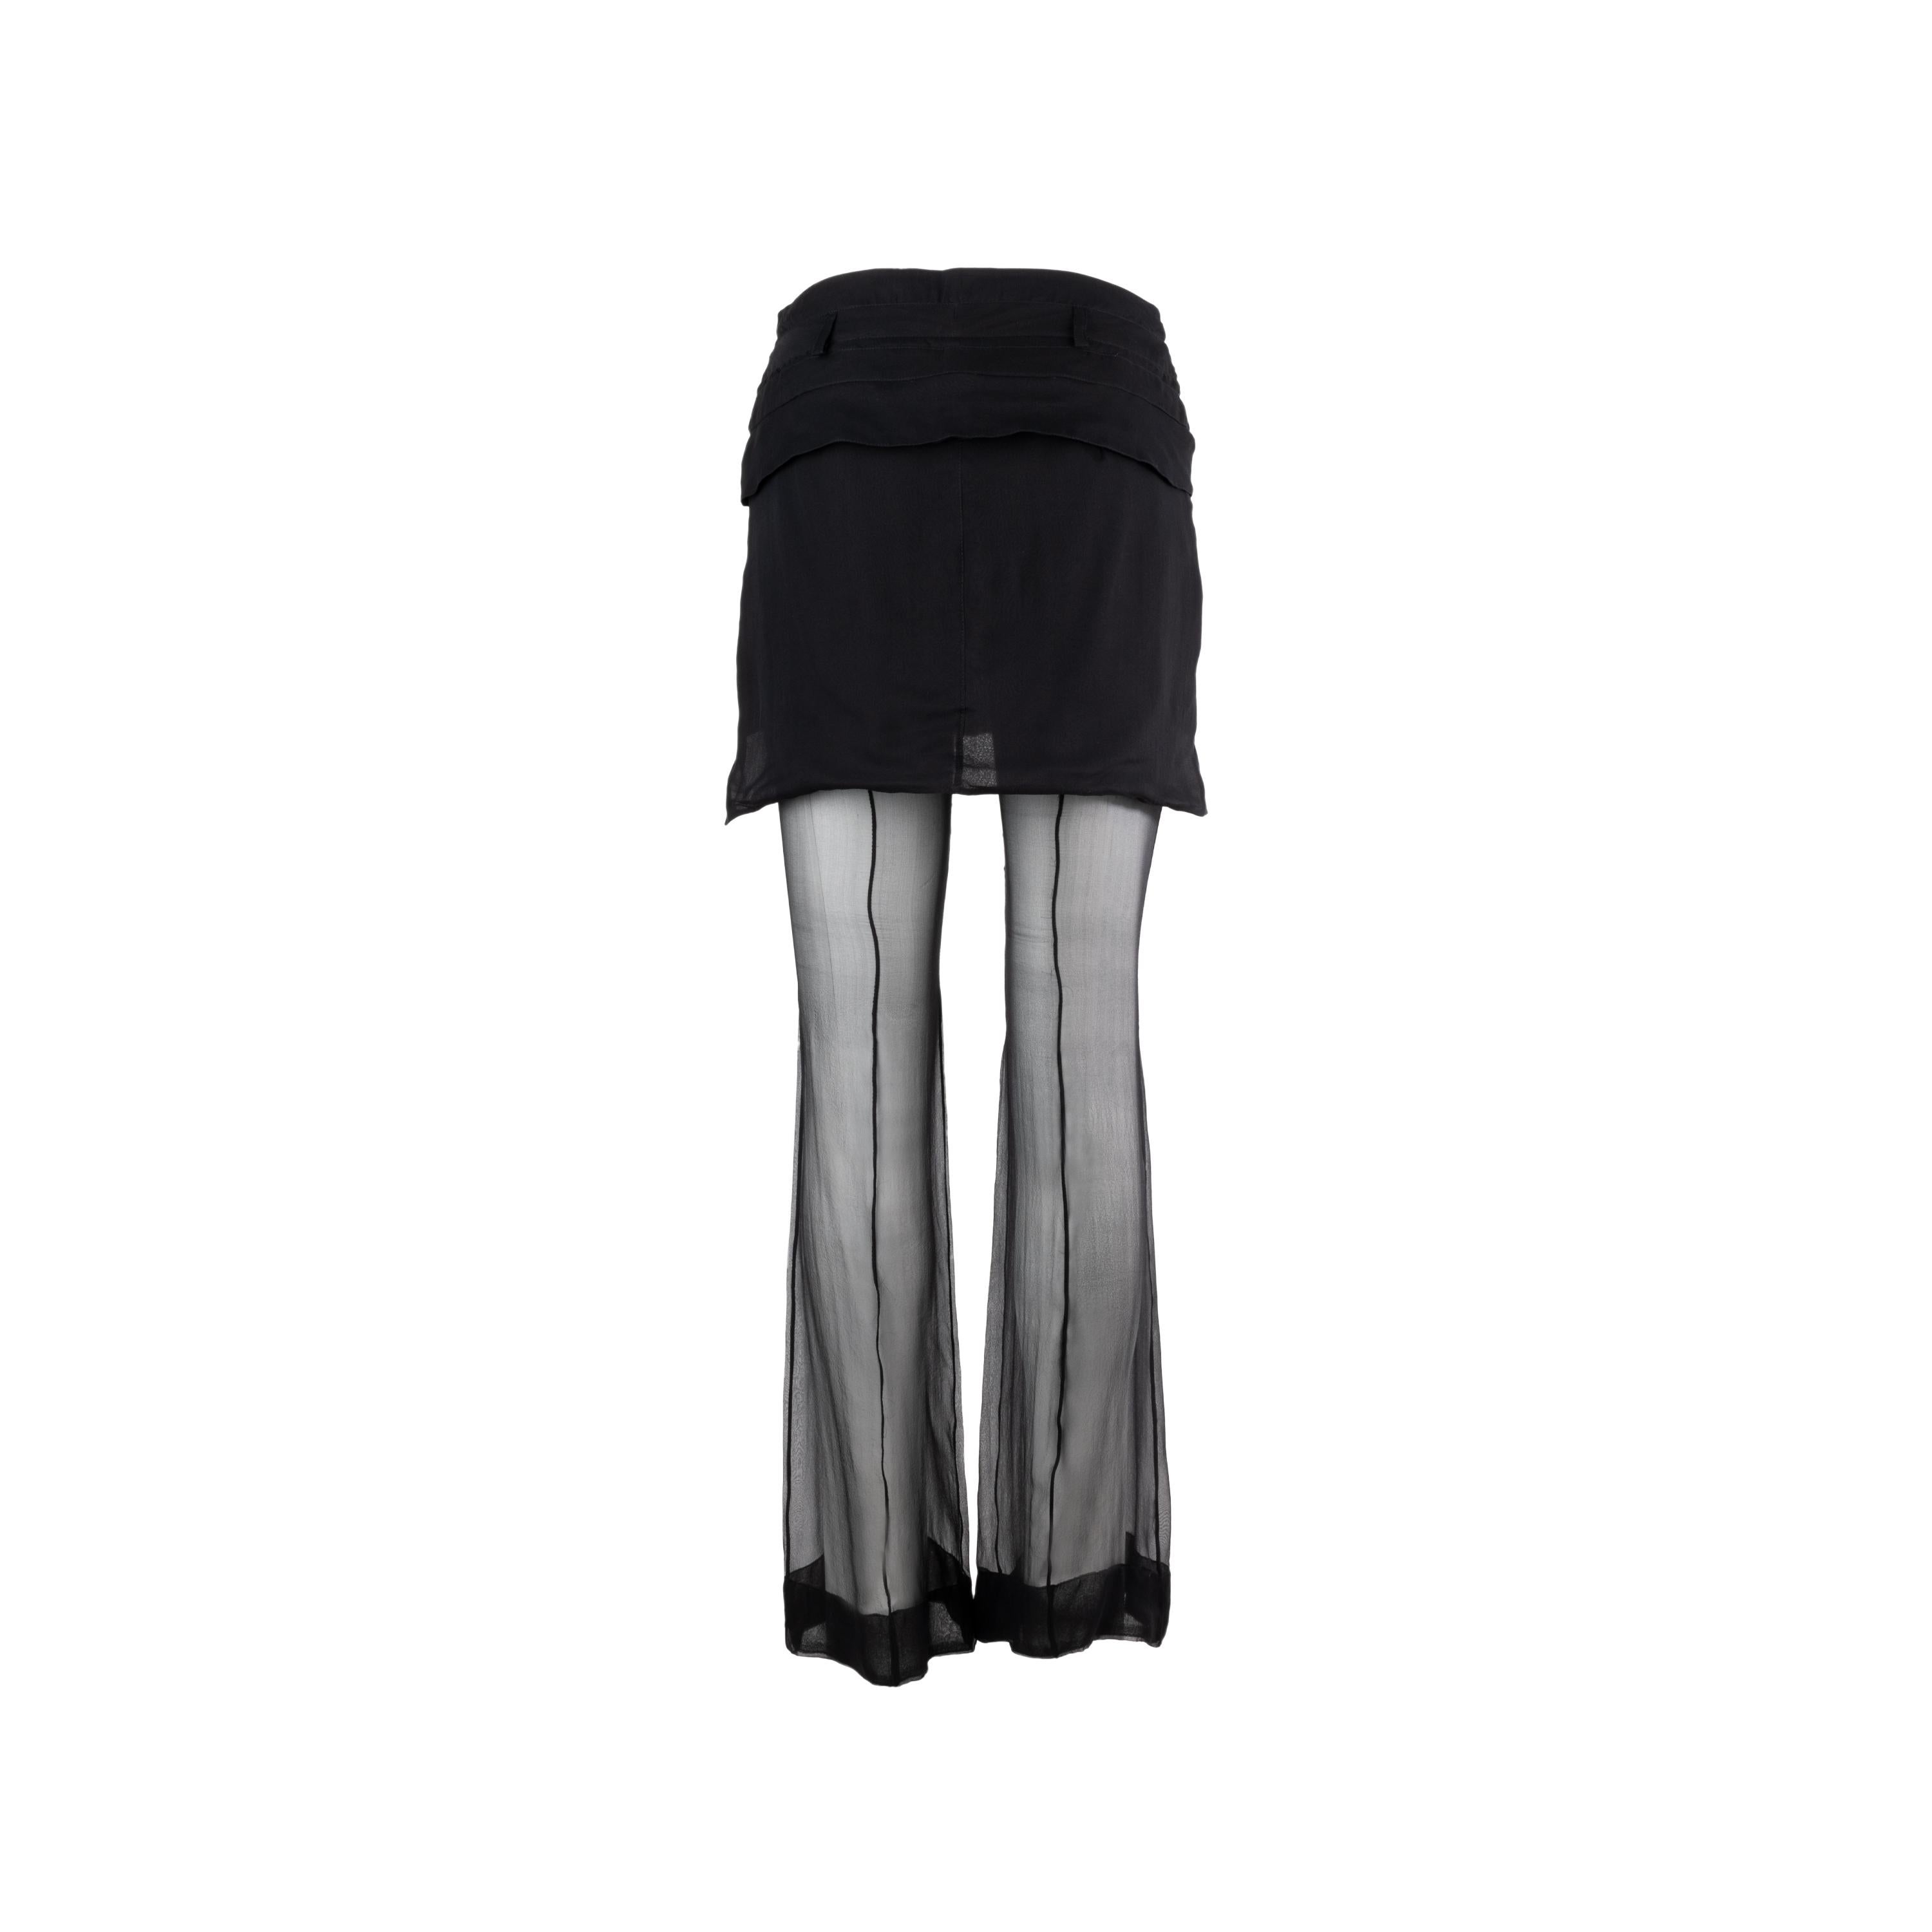 Pantalon en soie noire Givenchy. Fermeture à bouton central et ourlet évasé.
Remarques : L'ourlet a été modifié.